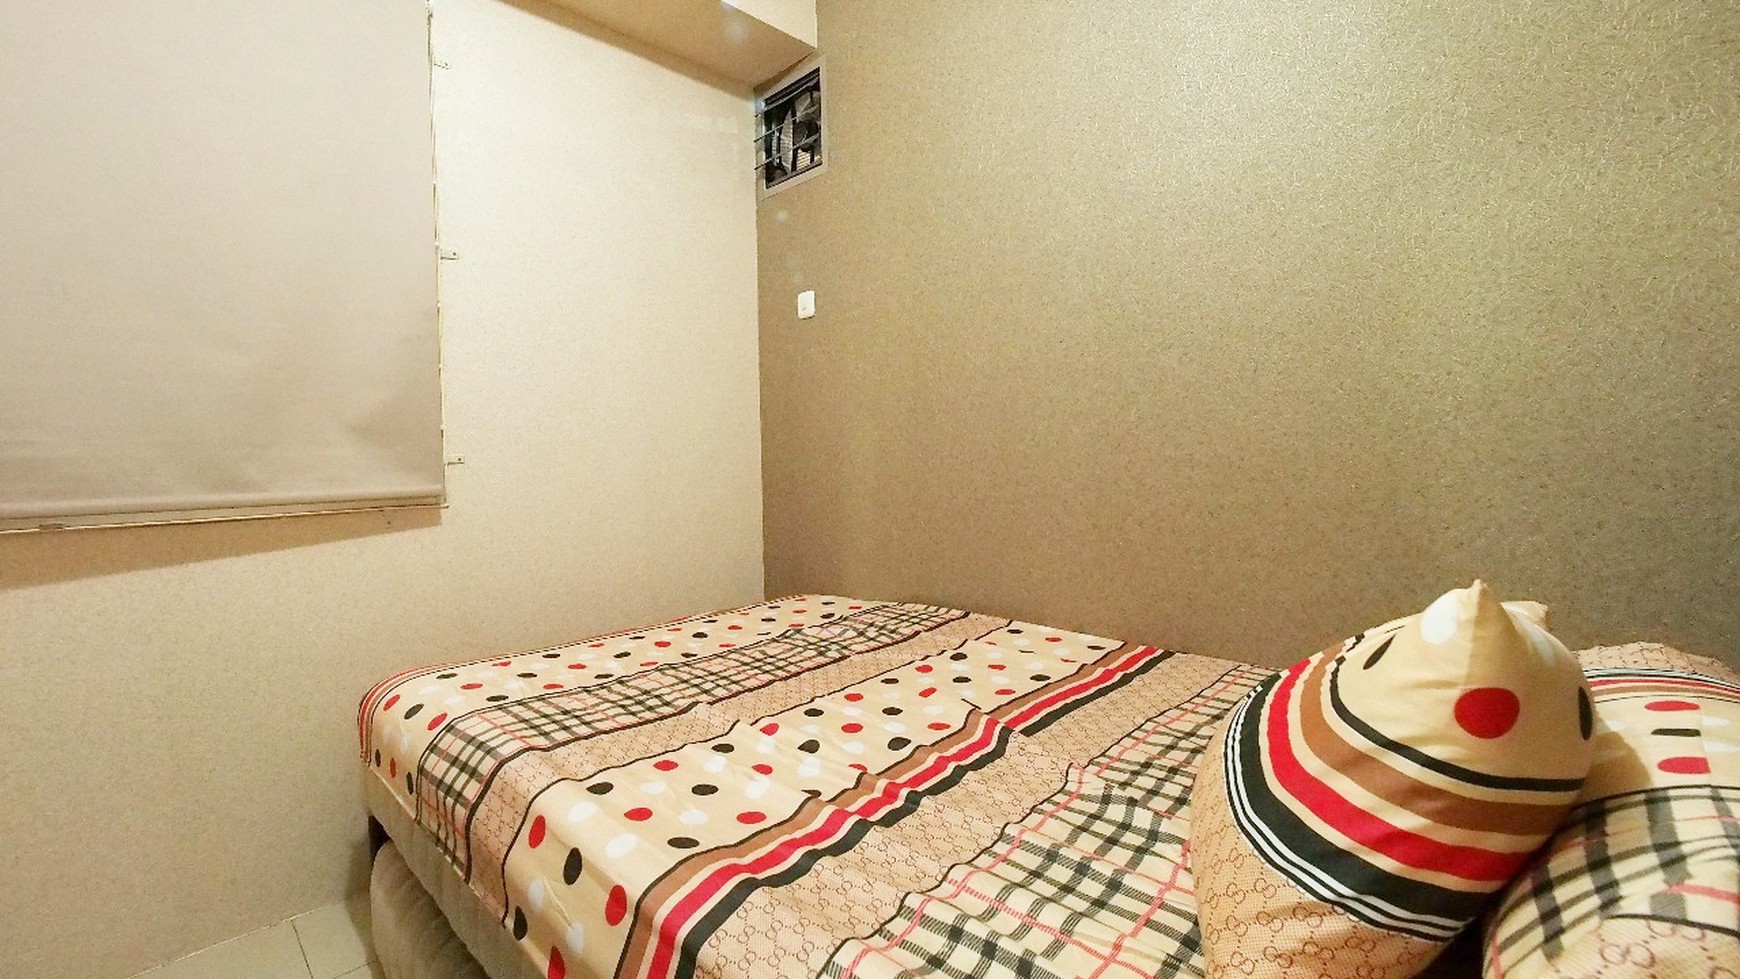 Apartemen 2 Bedroom Furnish Bagus di Tengah Kota Harga Murah di Kalibata Jakarta Selatan